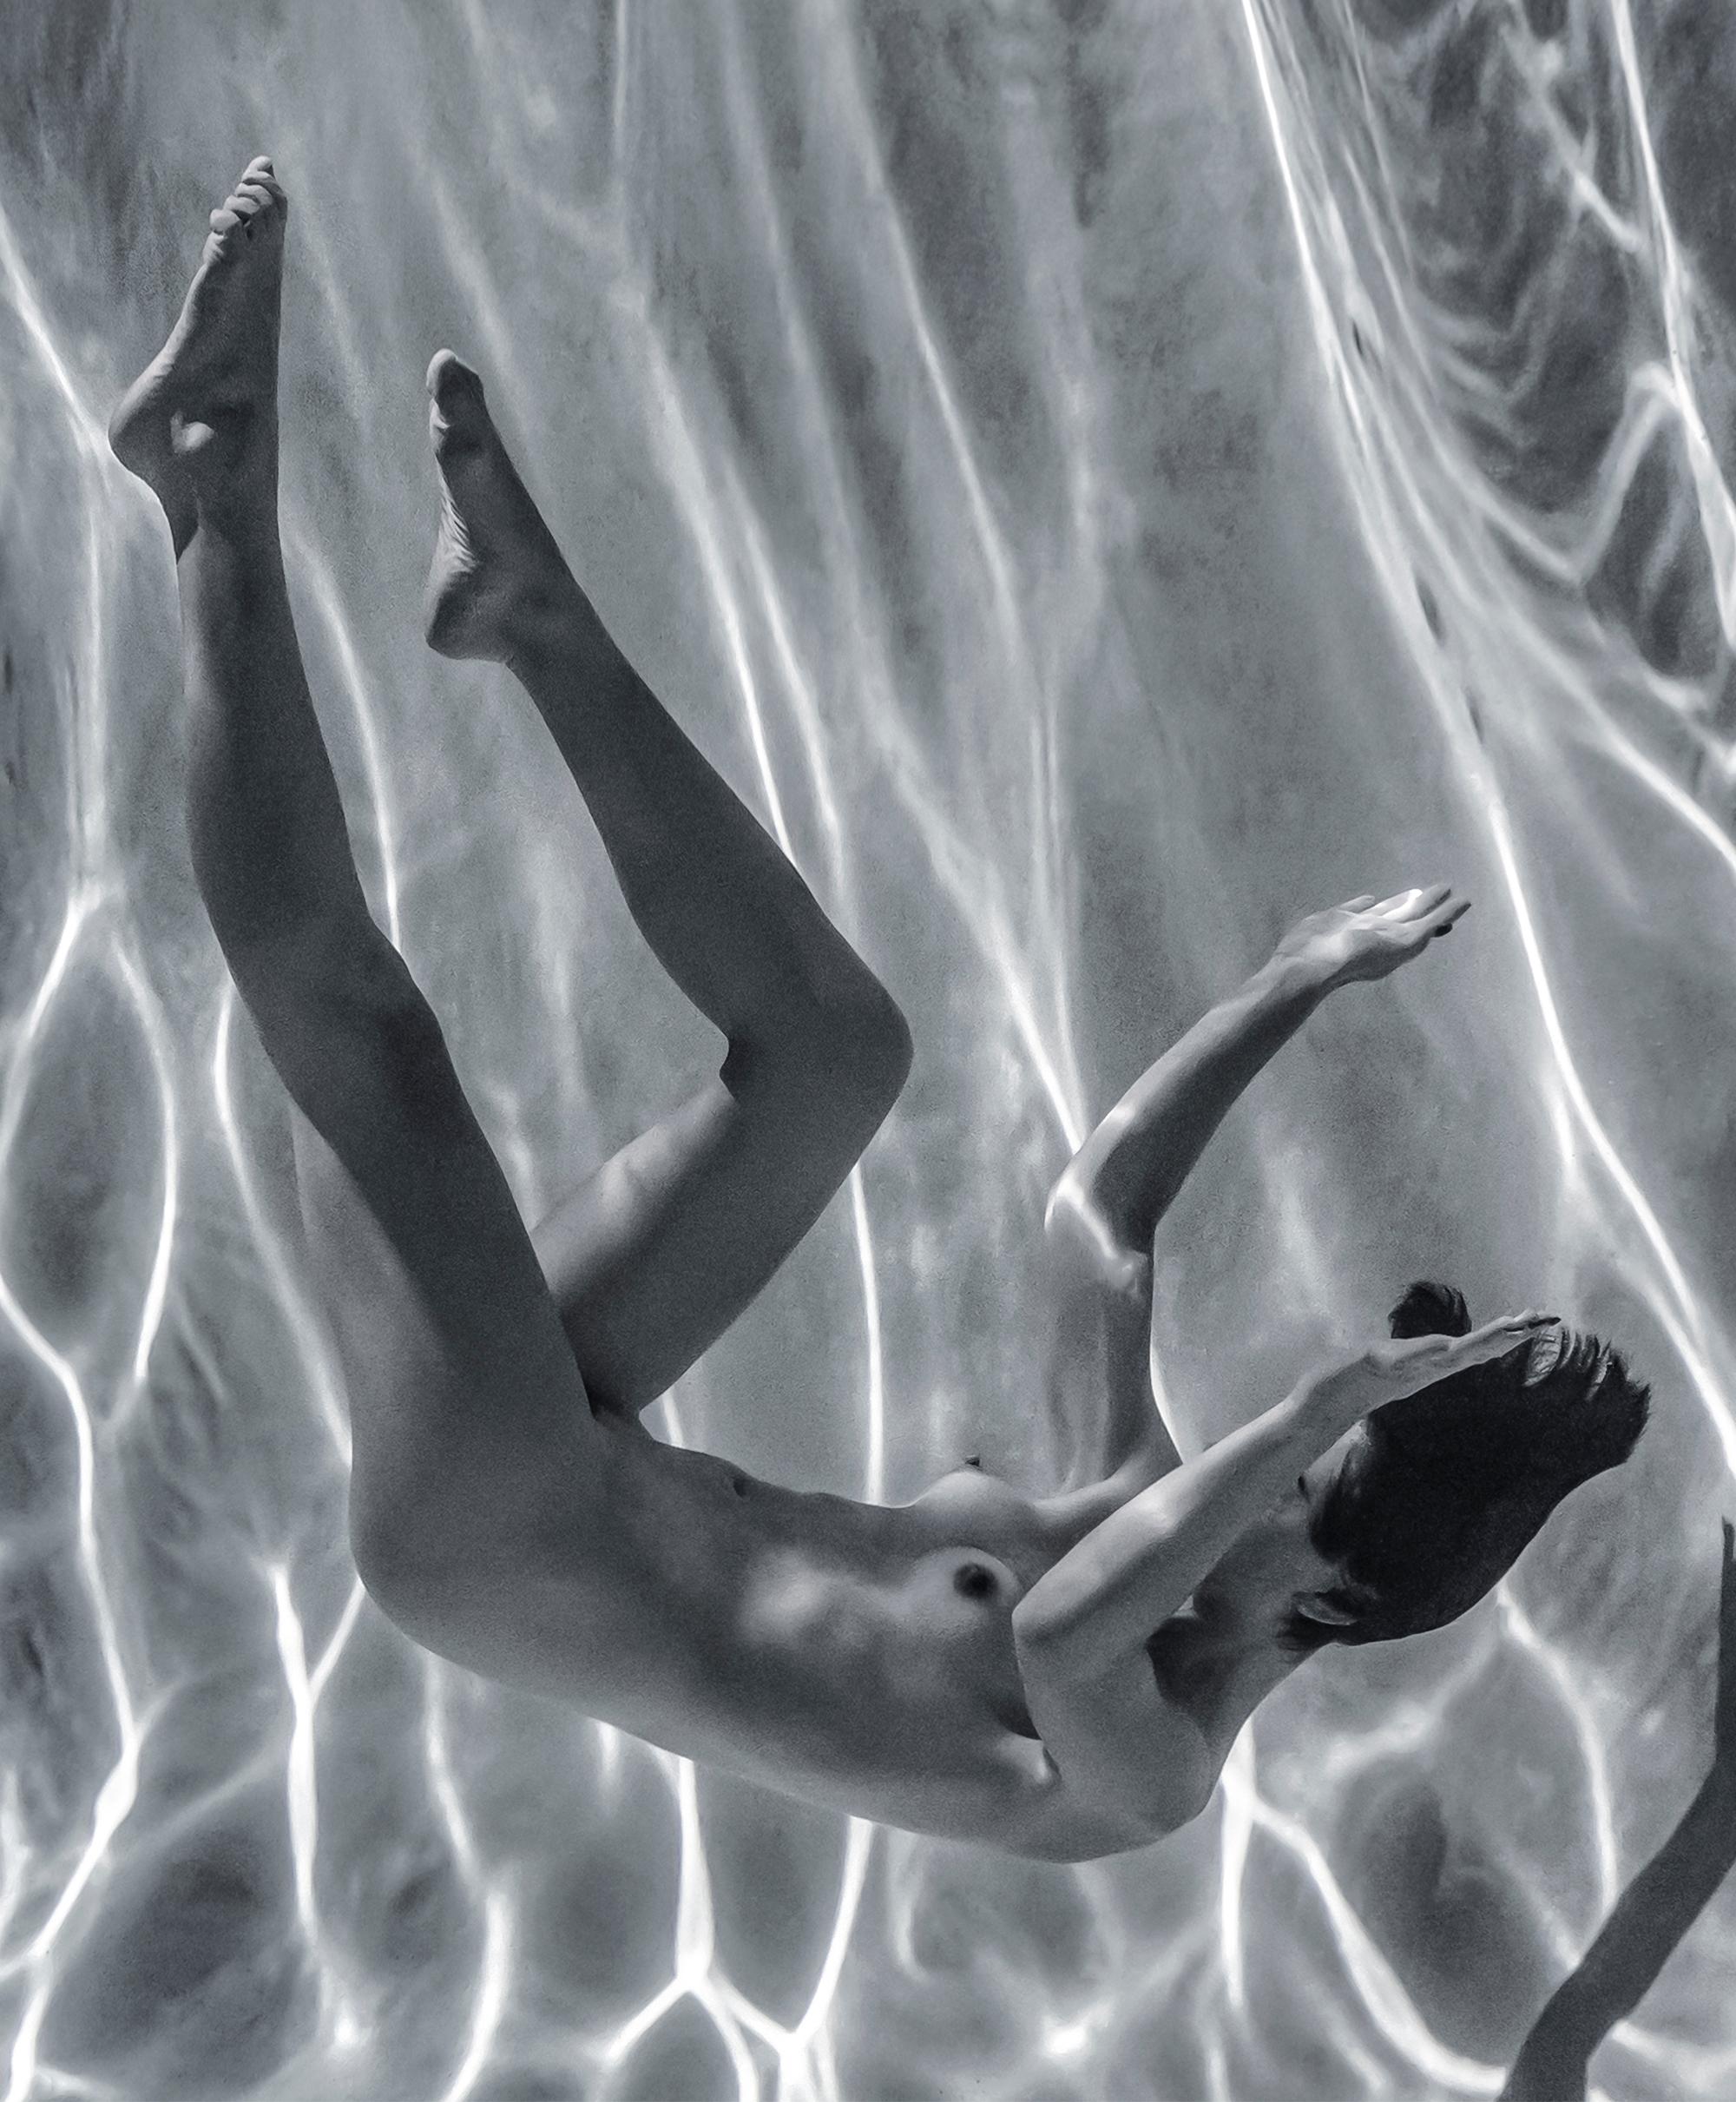 Photographie sous-marine en noir et blanc d'une jeune femme nue dans une piscine. 

Impression numérique originale sur plaque d'aluminium avec fond noir - signée par l'artiste.
L'œuvre d'art n'a pas besoin d'être encadrée : elle peut être suspendue